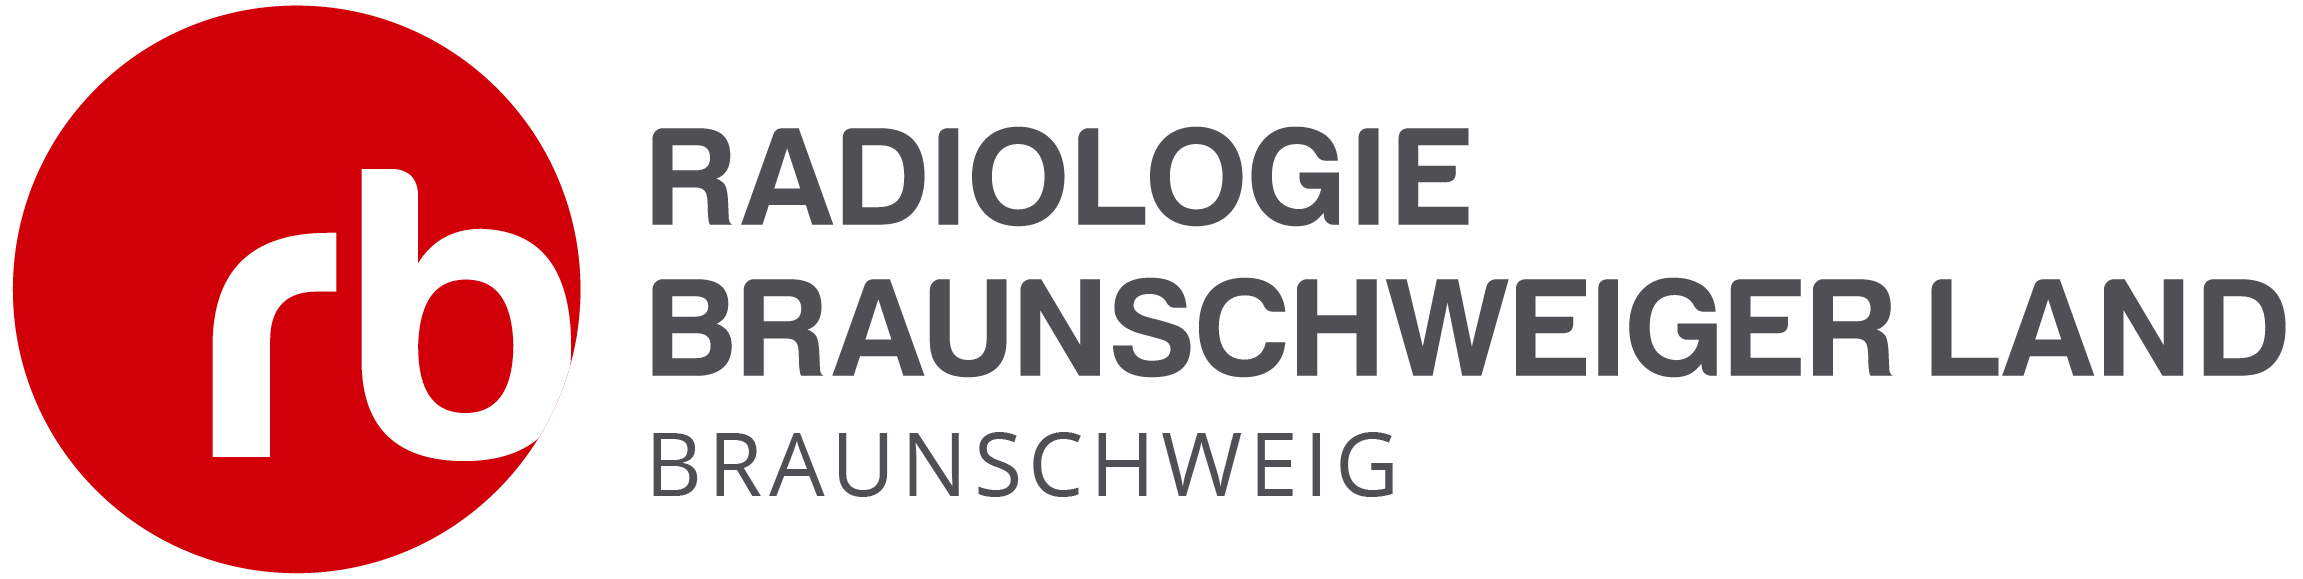 Radiologie Braunschweig